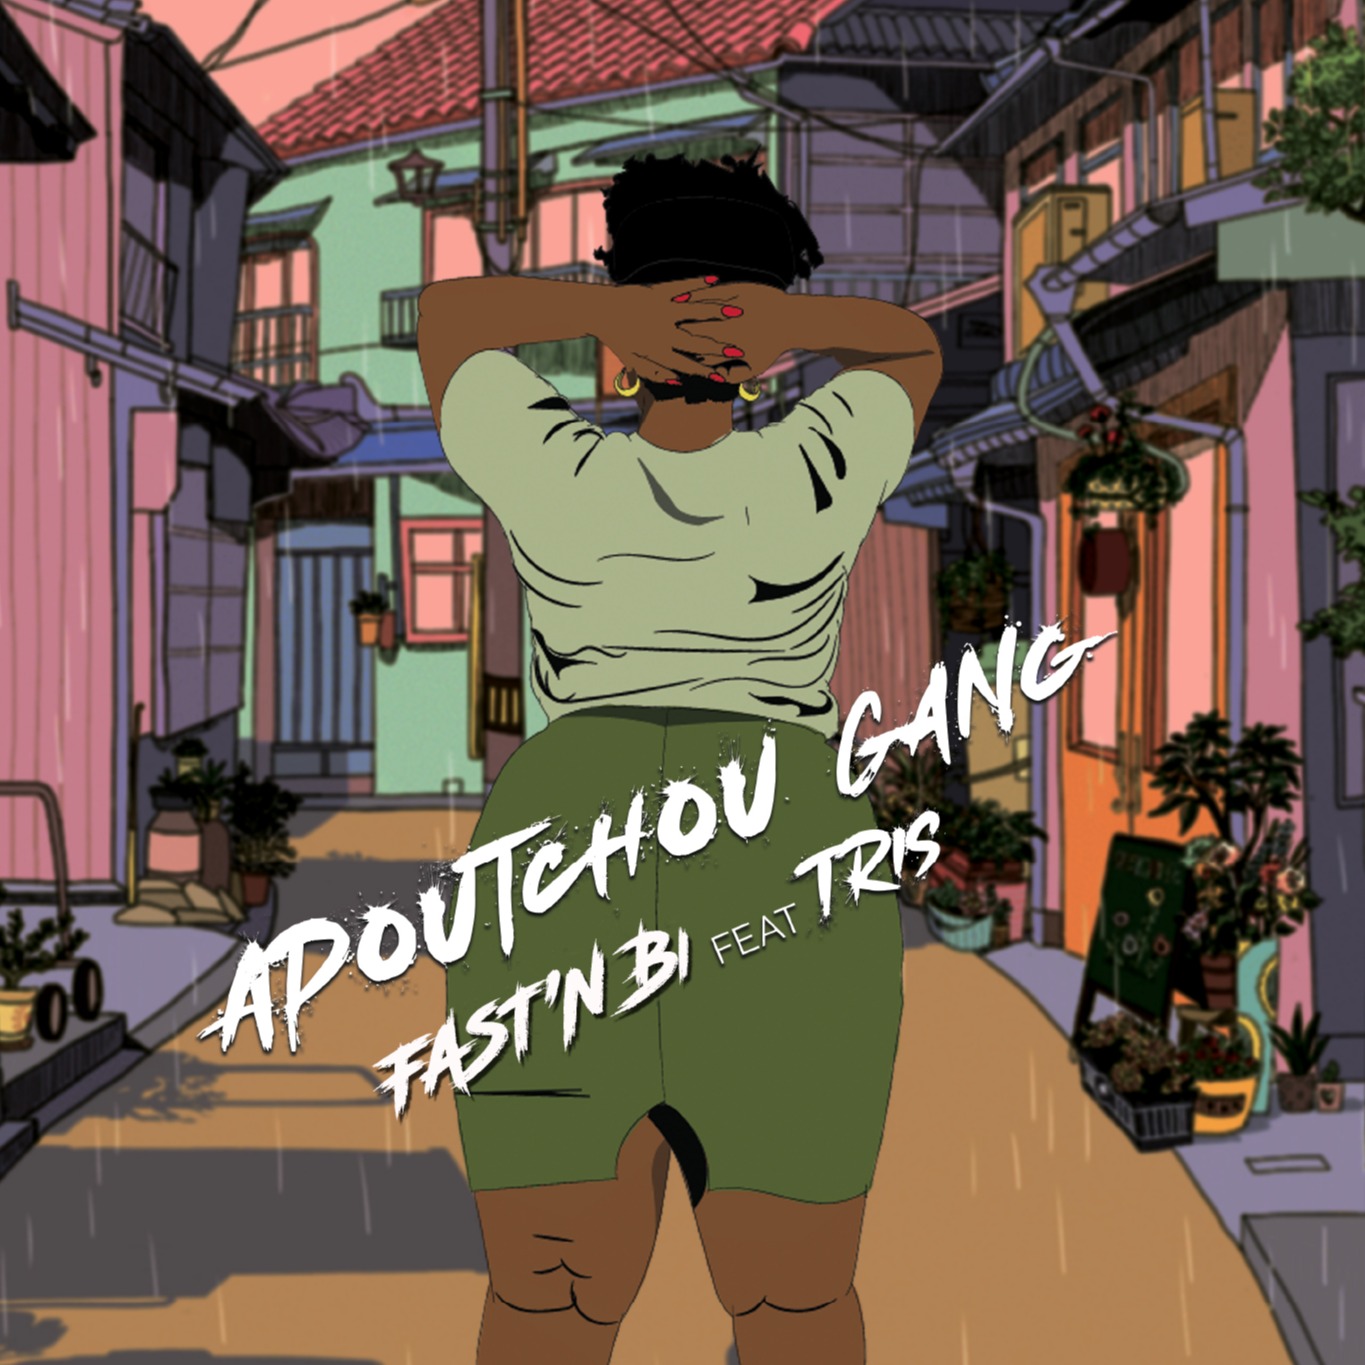 Cover Apoutchou gang Feat Tris